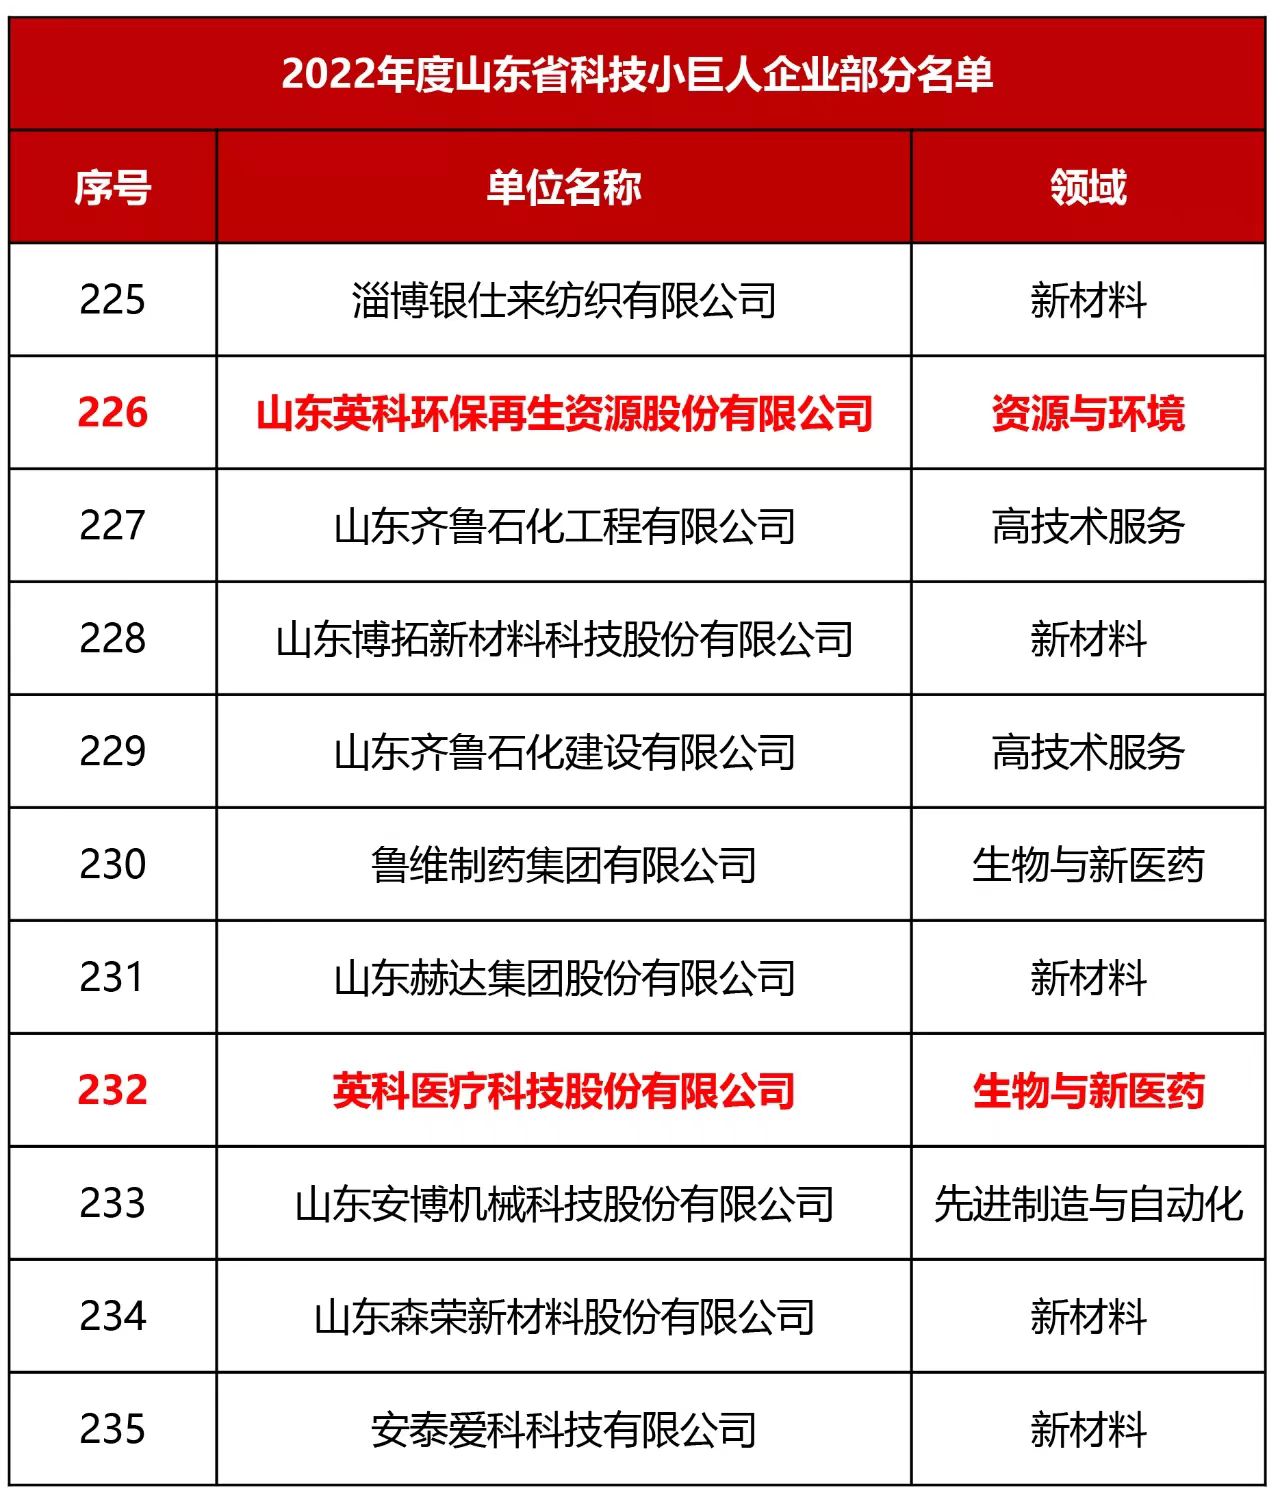 2022年度山东省科技小巨人企业部分名单